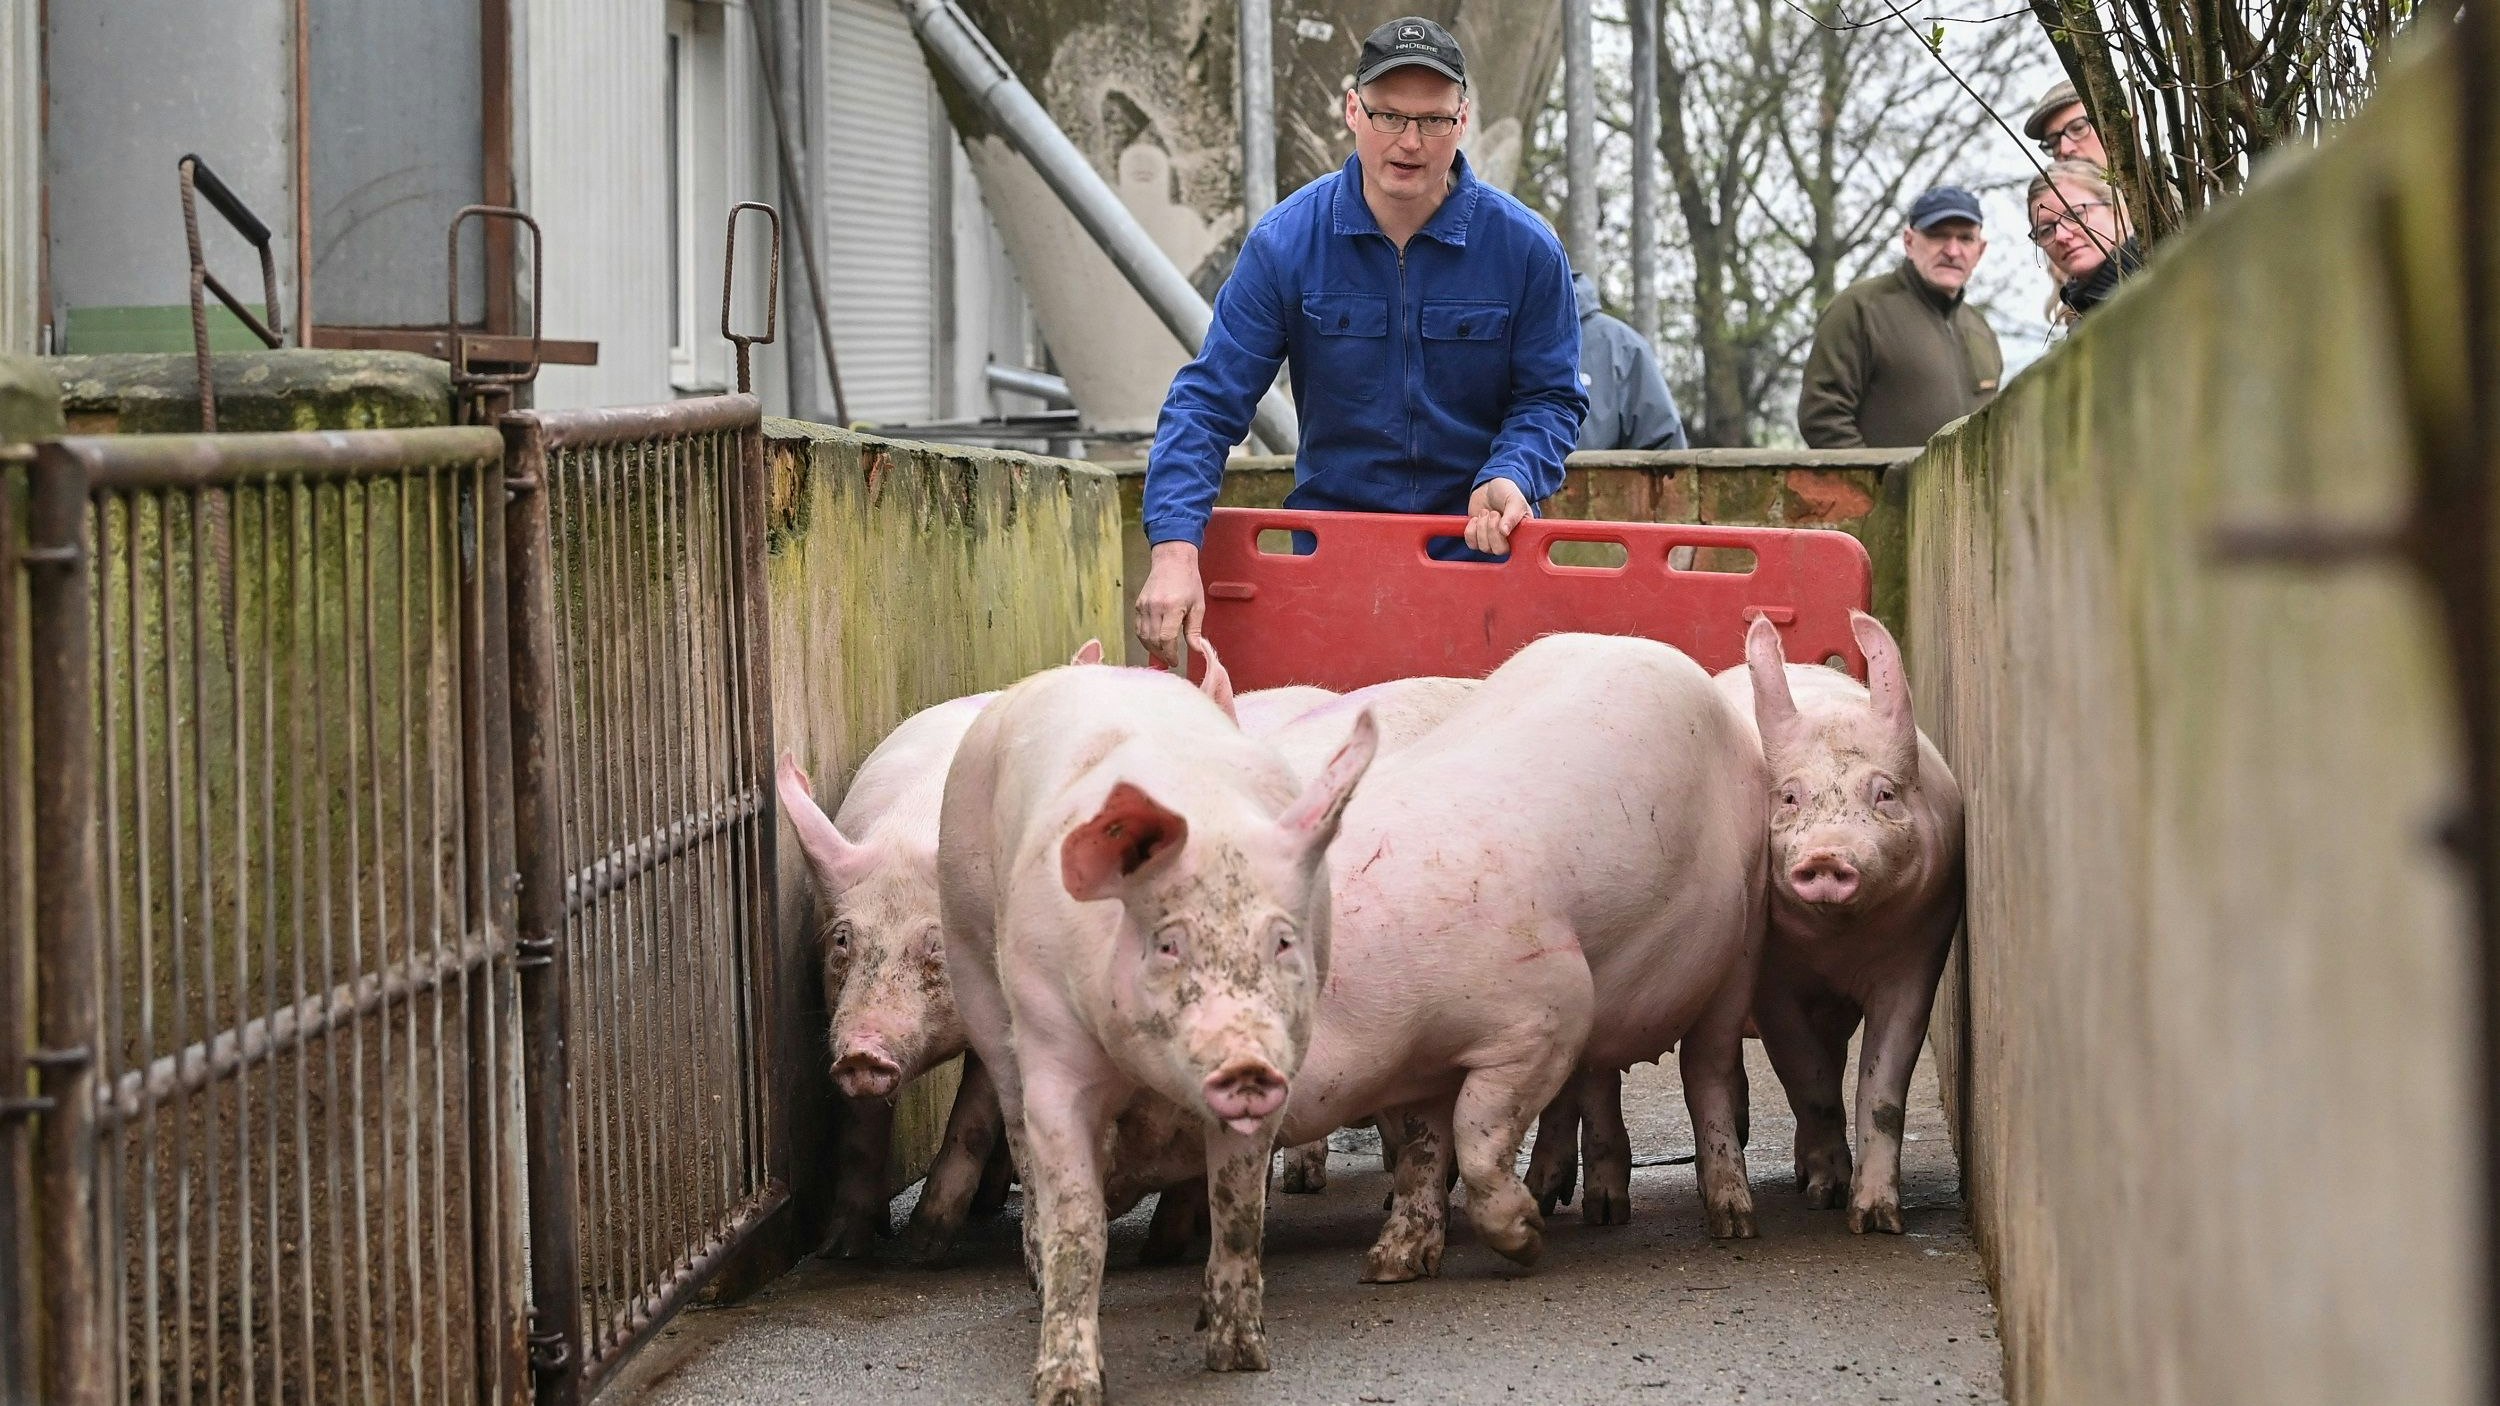 Branche in Schwierigkeiten: Wegen der Coronapandemie sank der Absatz an Schweinefleisch enorm.&nbsp; &nbsp;Foto: dpa/Pleul